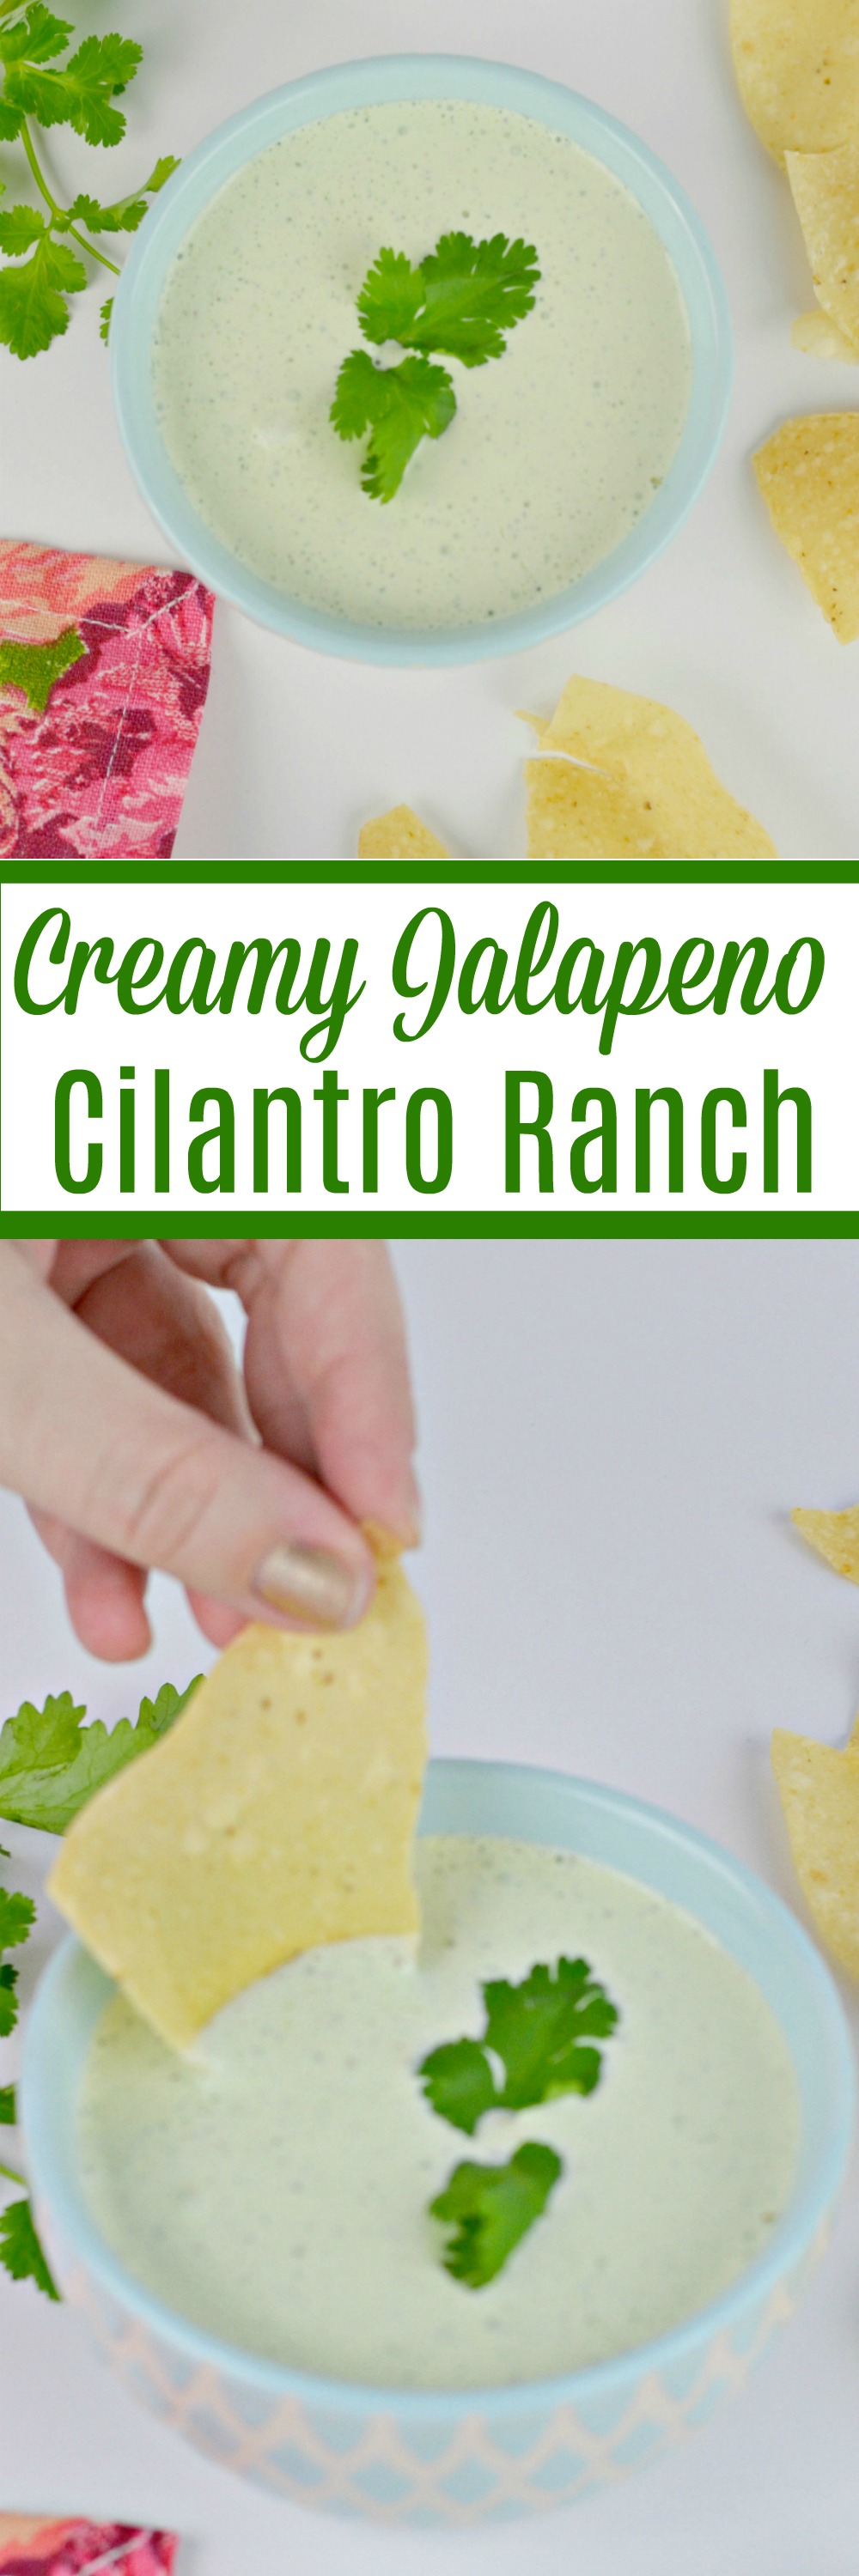 Creamy Jalapeno Cilantro Ranch